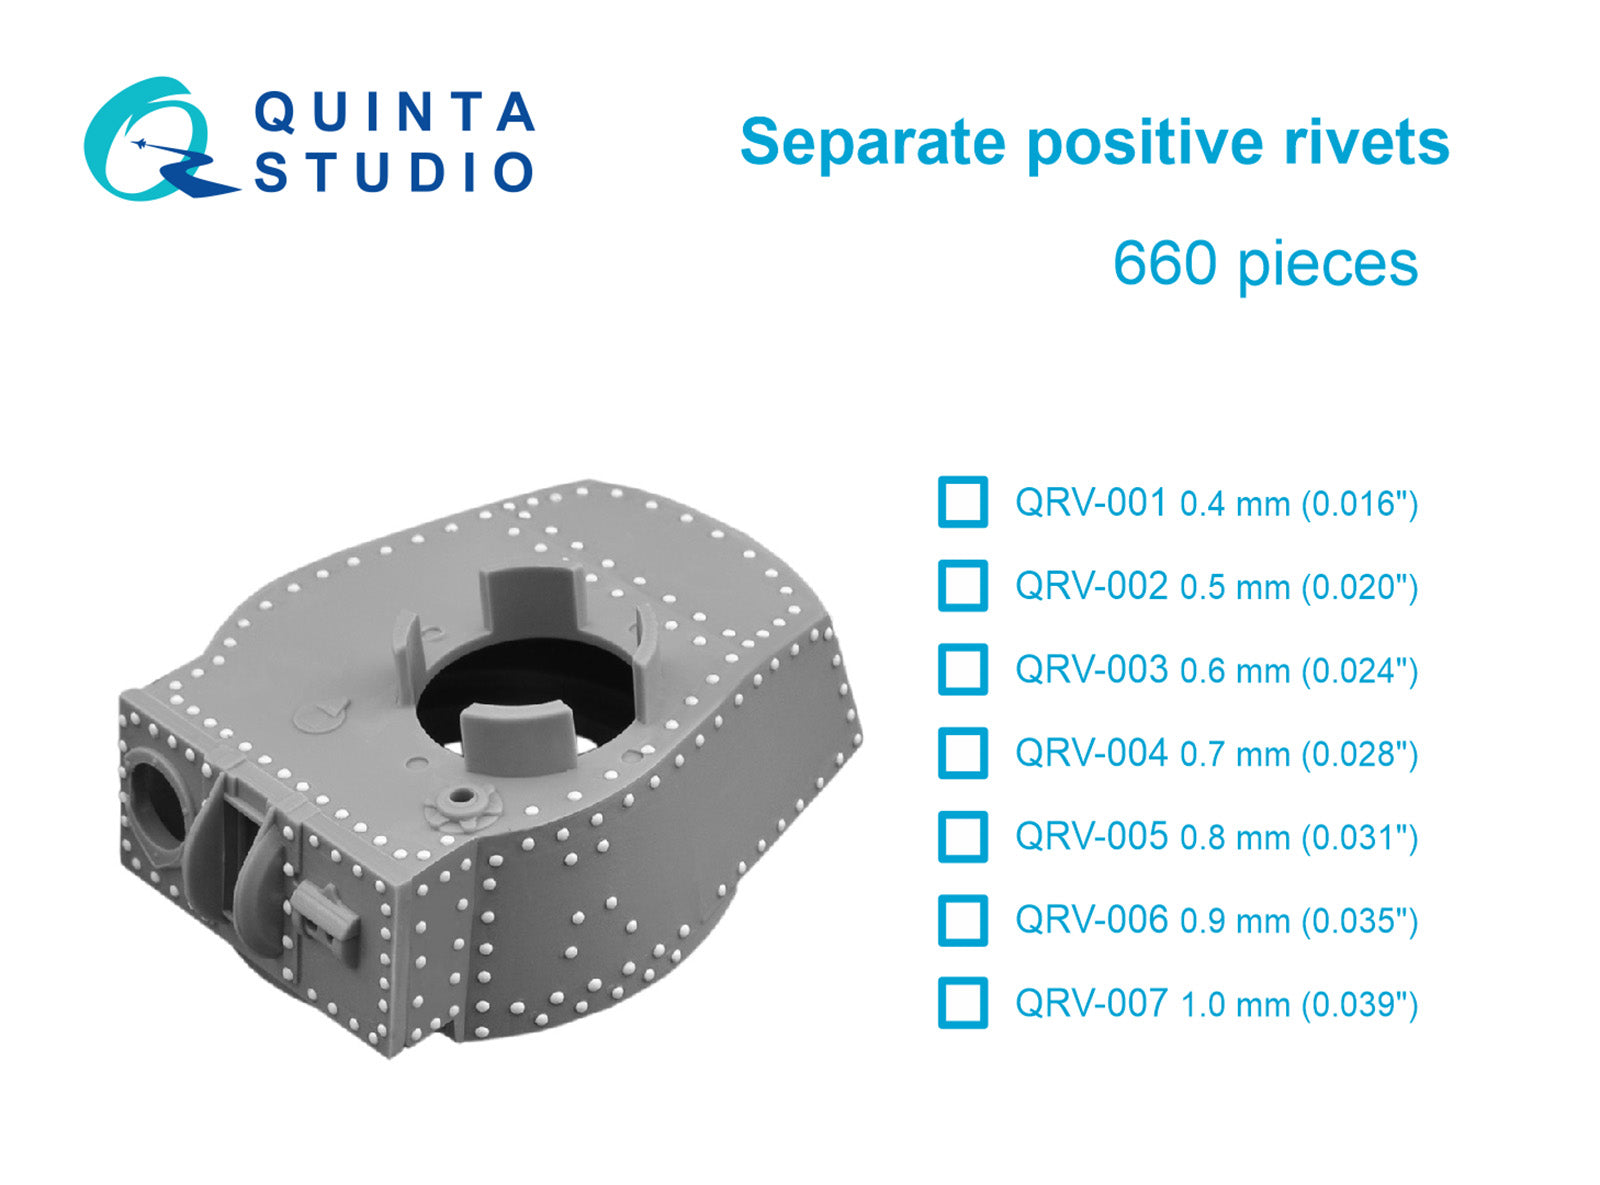 Quinta Studio - Separate positive rivets, 0.9mm (0.035") 660 pcs QRV-006